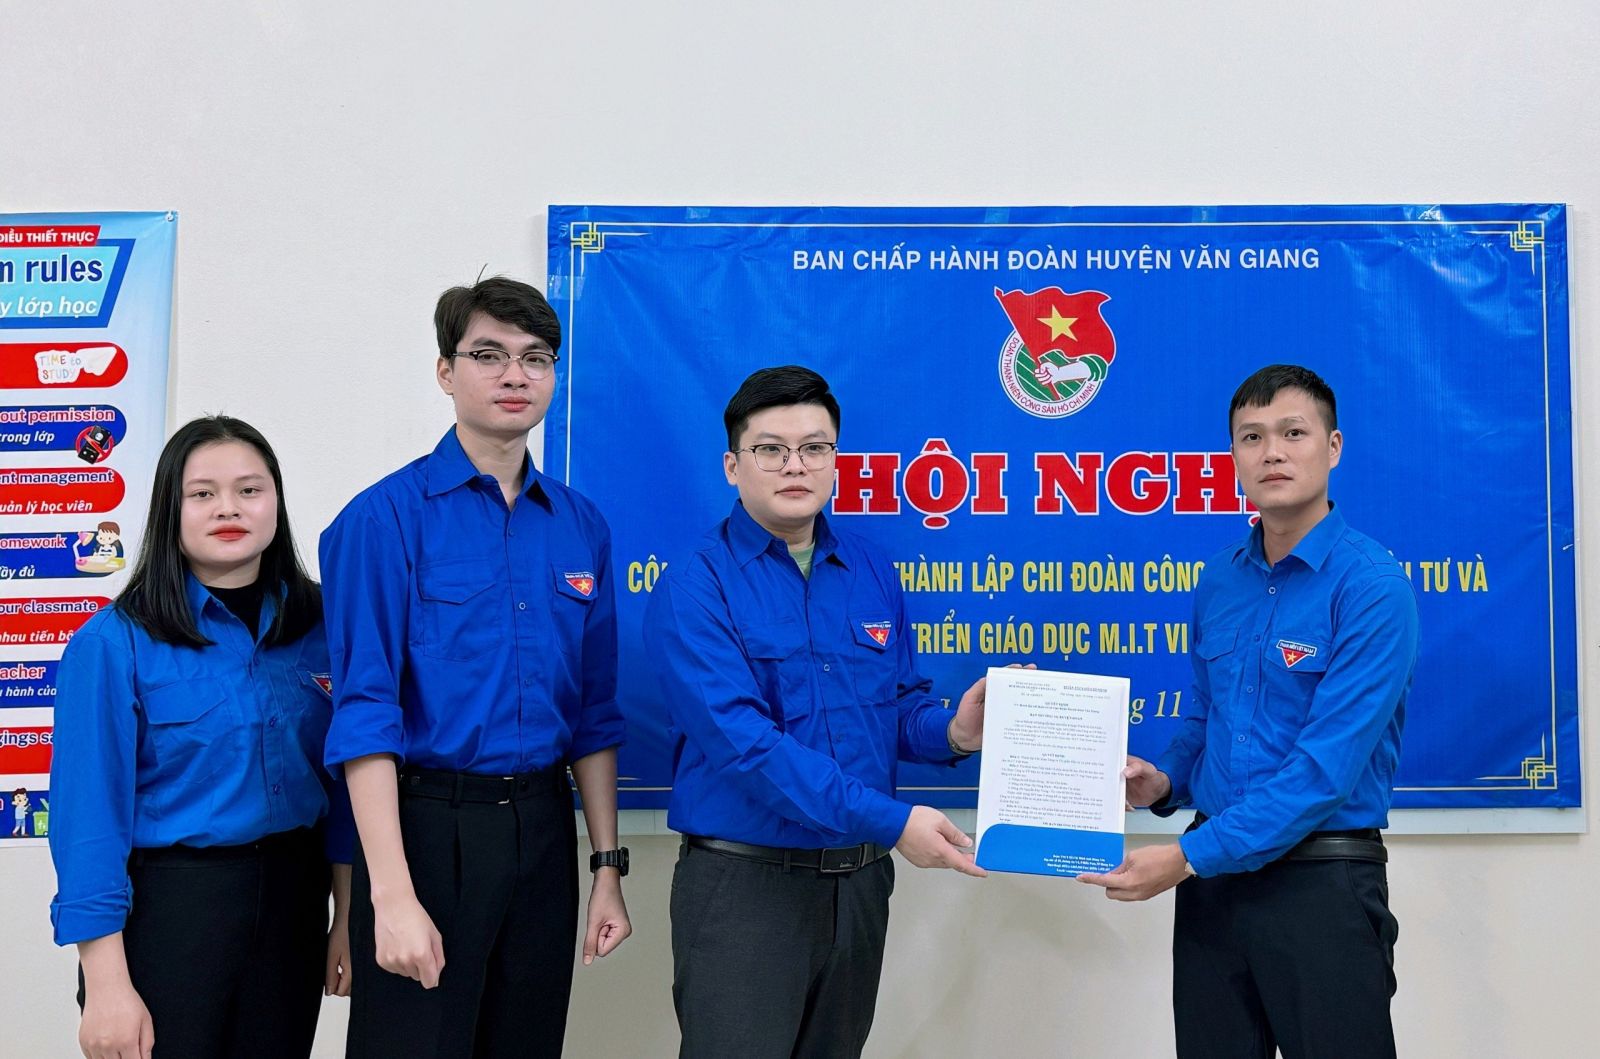 Huyện đoàn Văn Giang thành lập Chi đoàn Công ty cổ phần đầu tư và phát triển giáo dục M.I.T Việt Nam